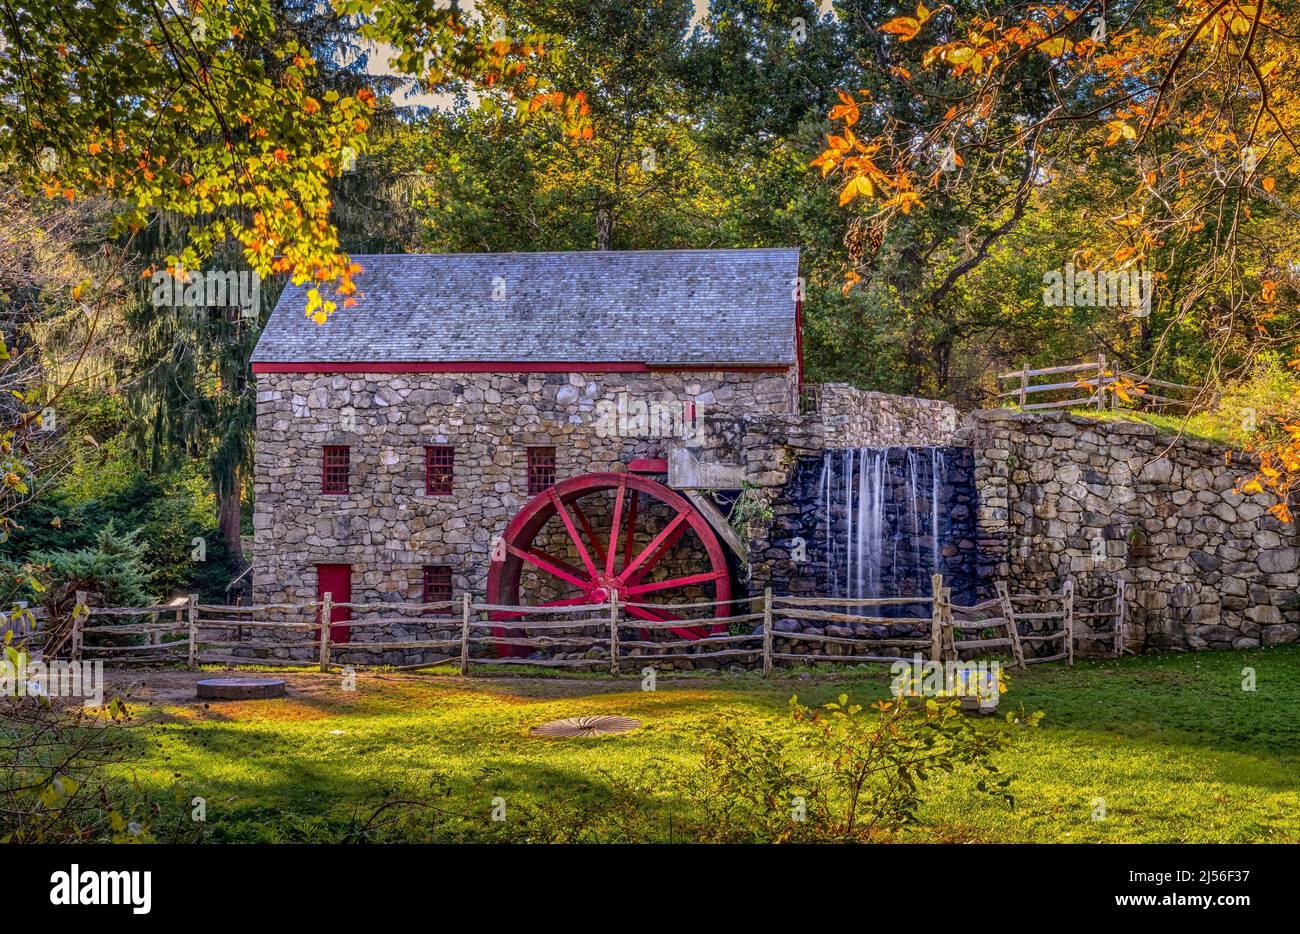 The Old Wayside Inn Grist Mill in Sudbury, Massachusetts, in Fall season Stock Photo